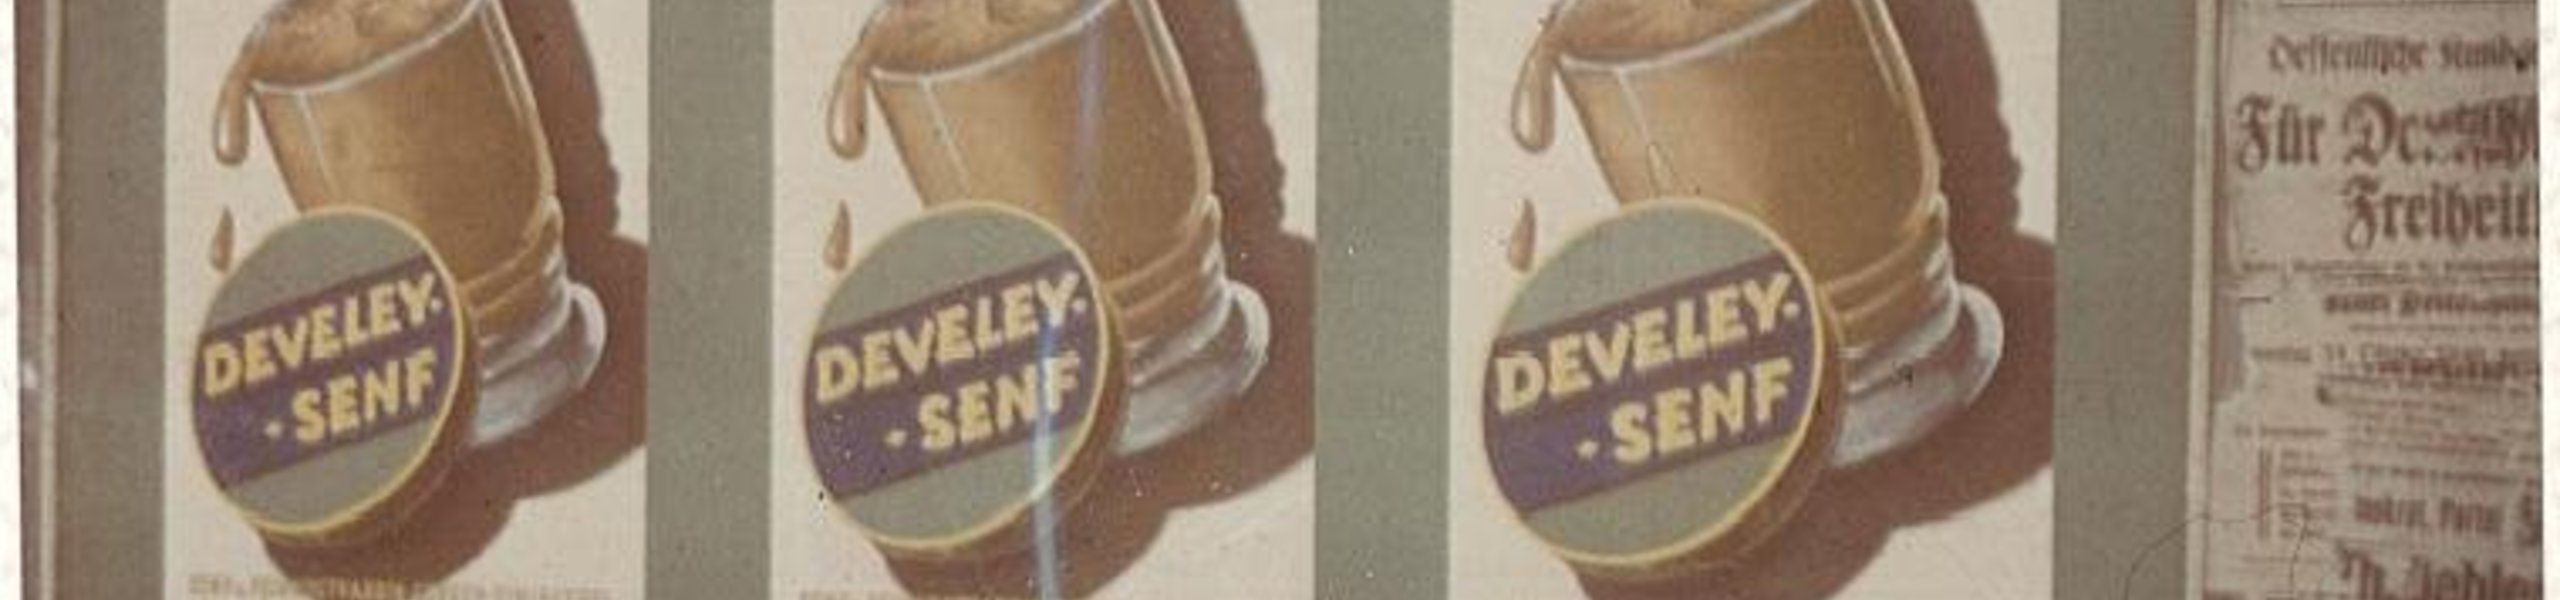 Alte Anzeige von Develey im Jahre 1949